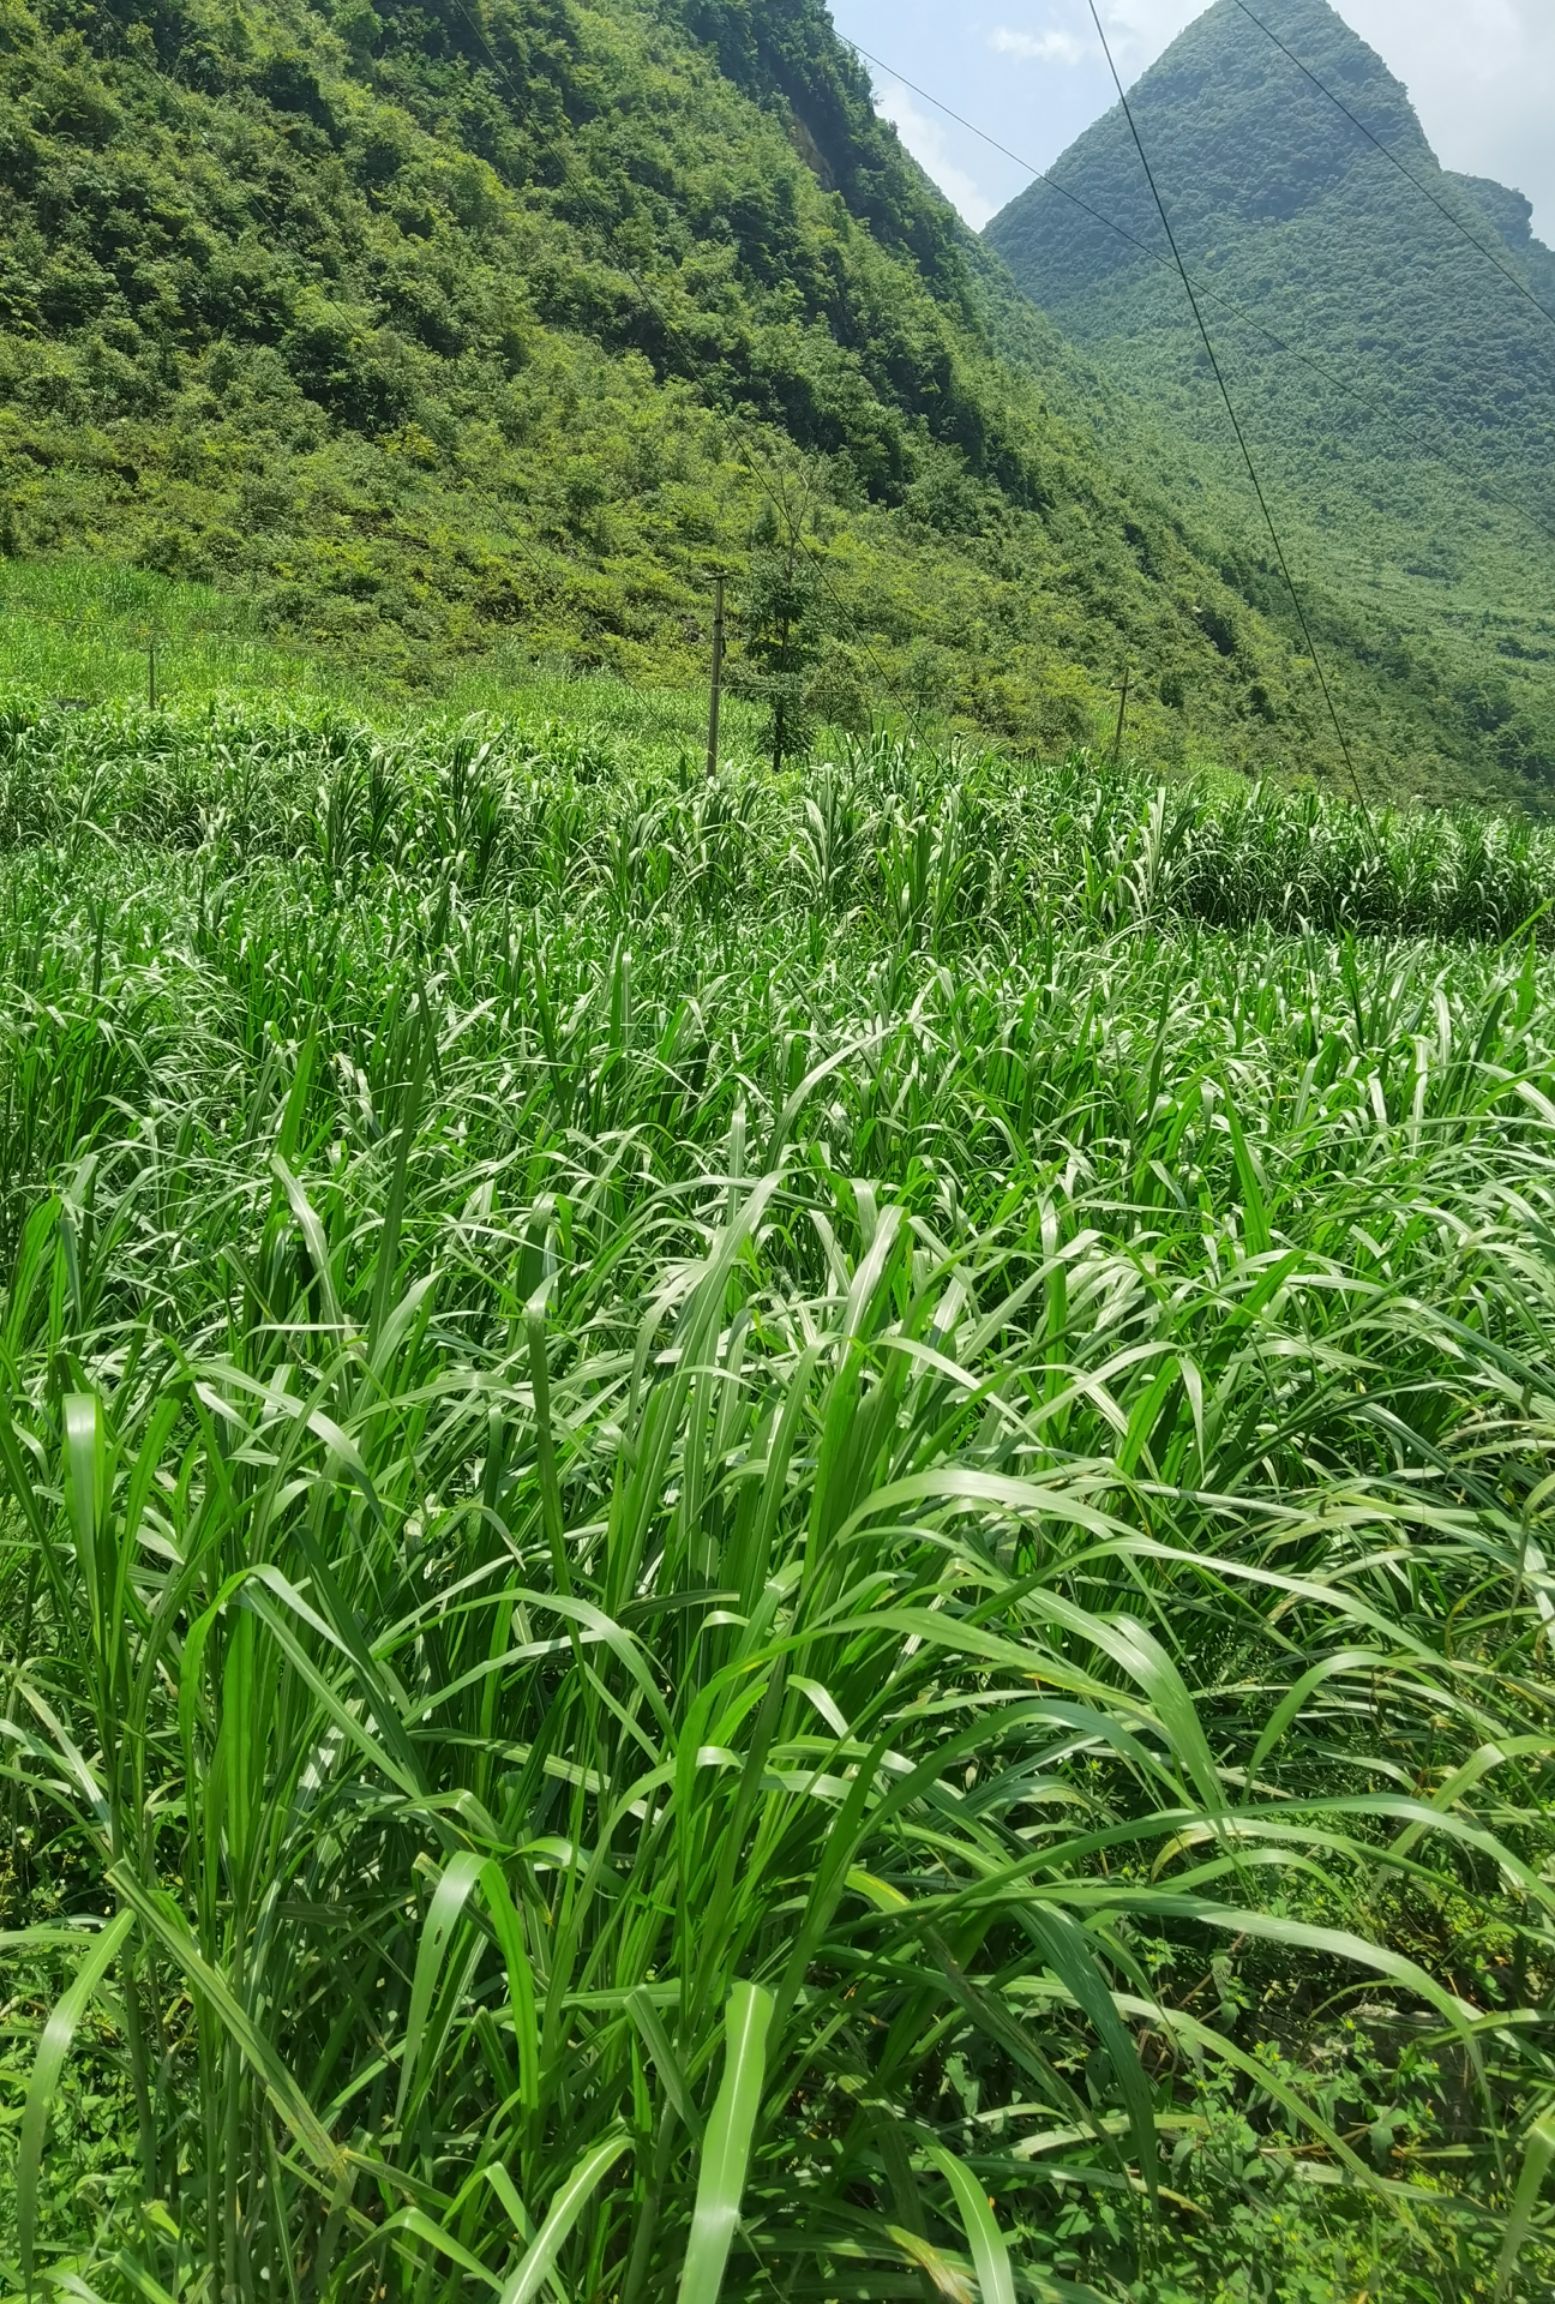 地区广泛栽培的一种新型高蛋白高产牧草,具有适应性强,繁殖快,产量高